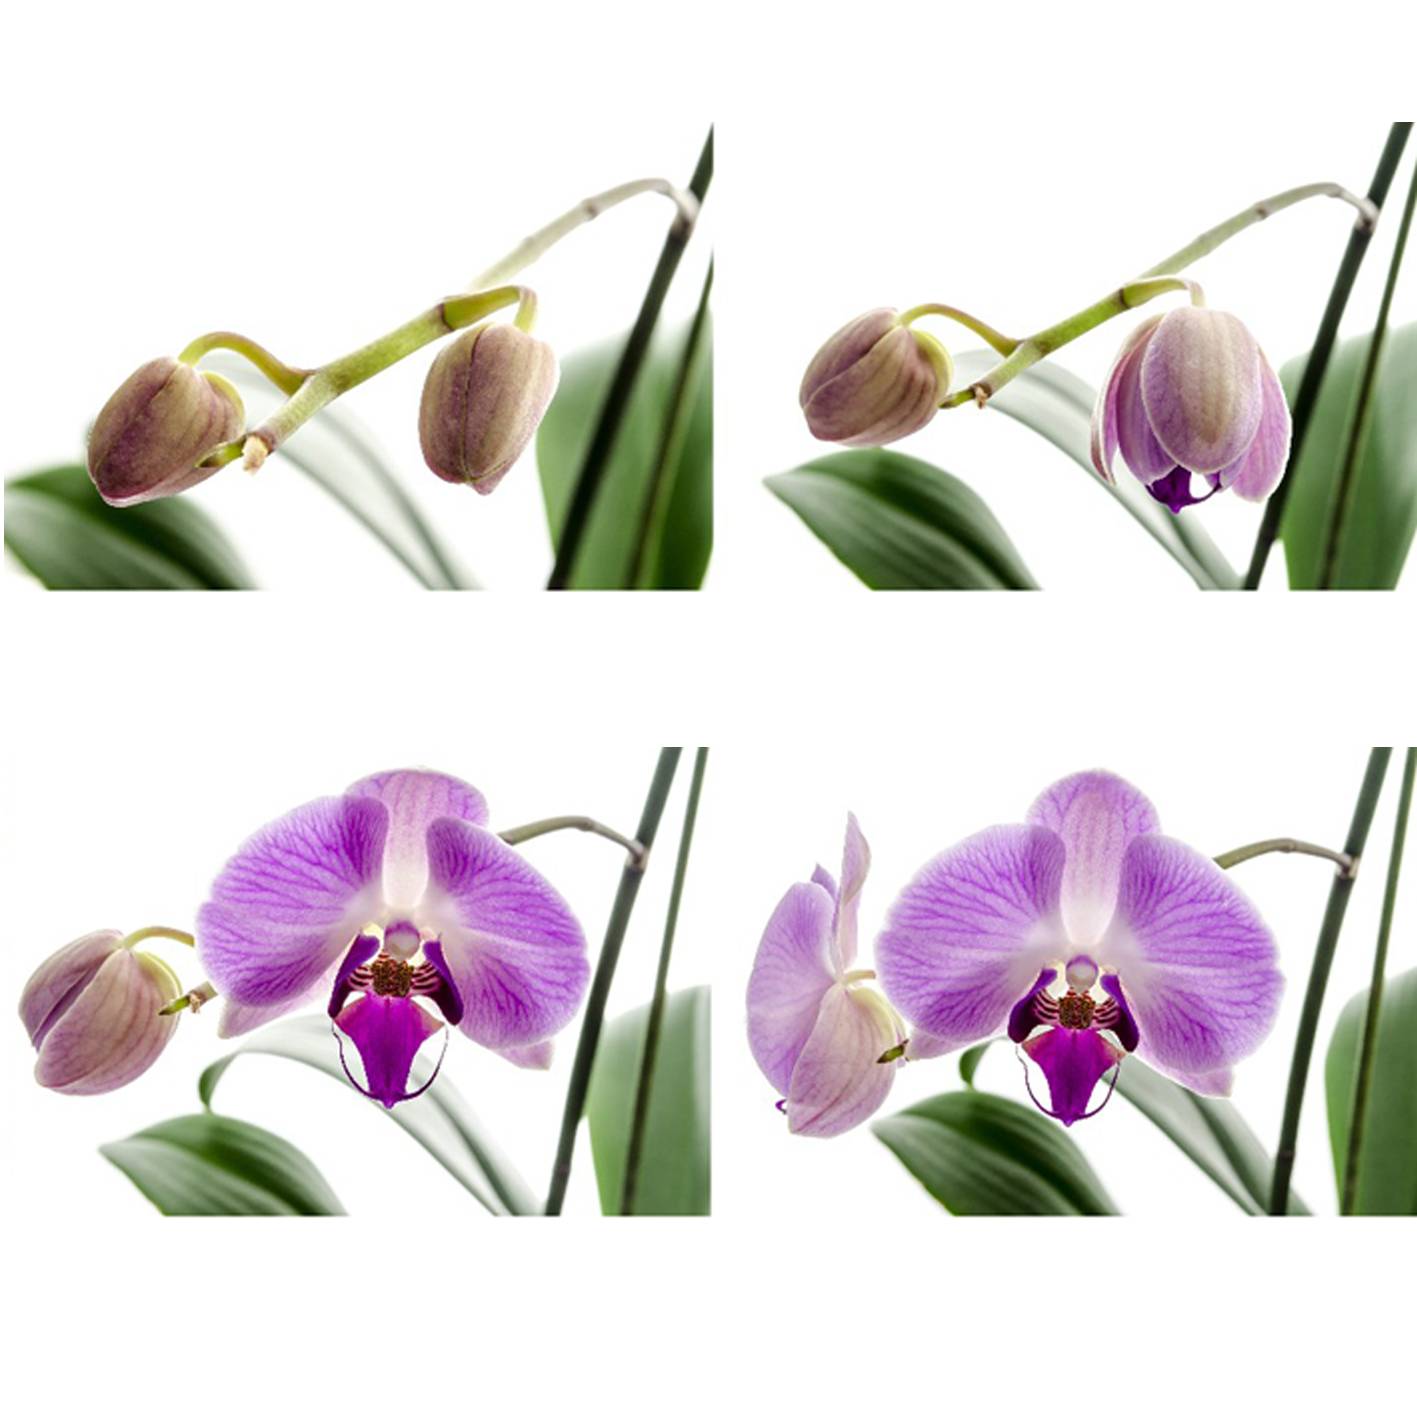 Варианты пересадки орхидеи во время цветения: примеры в домашних условиях